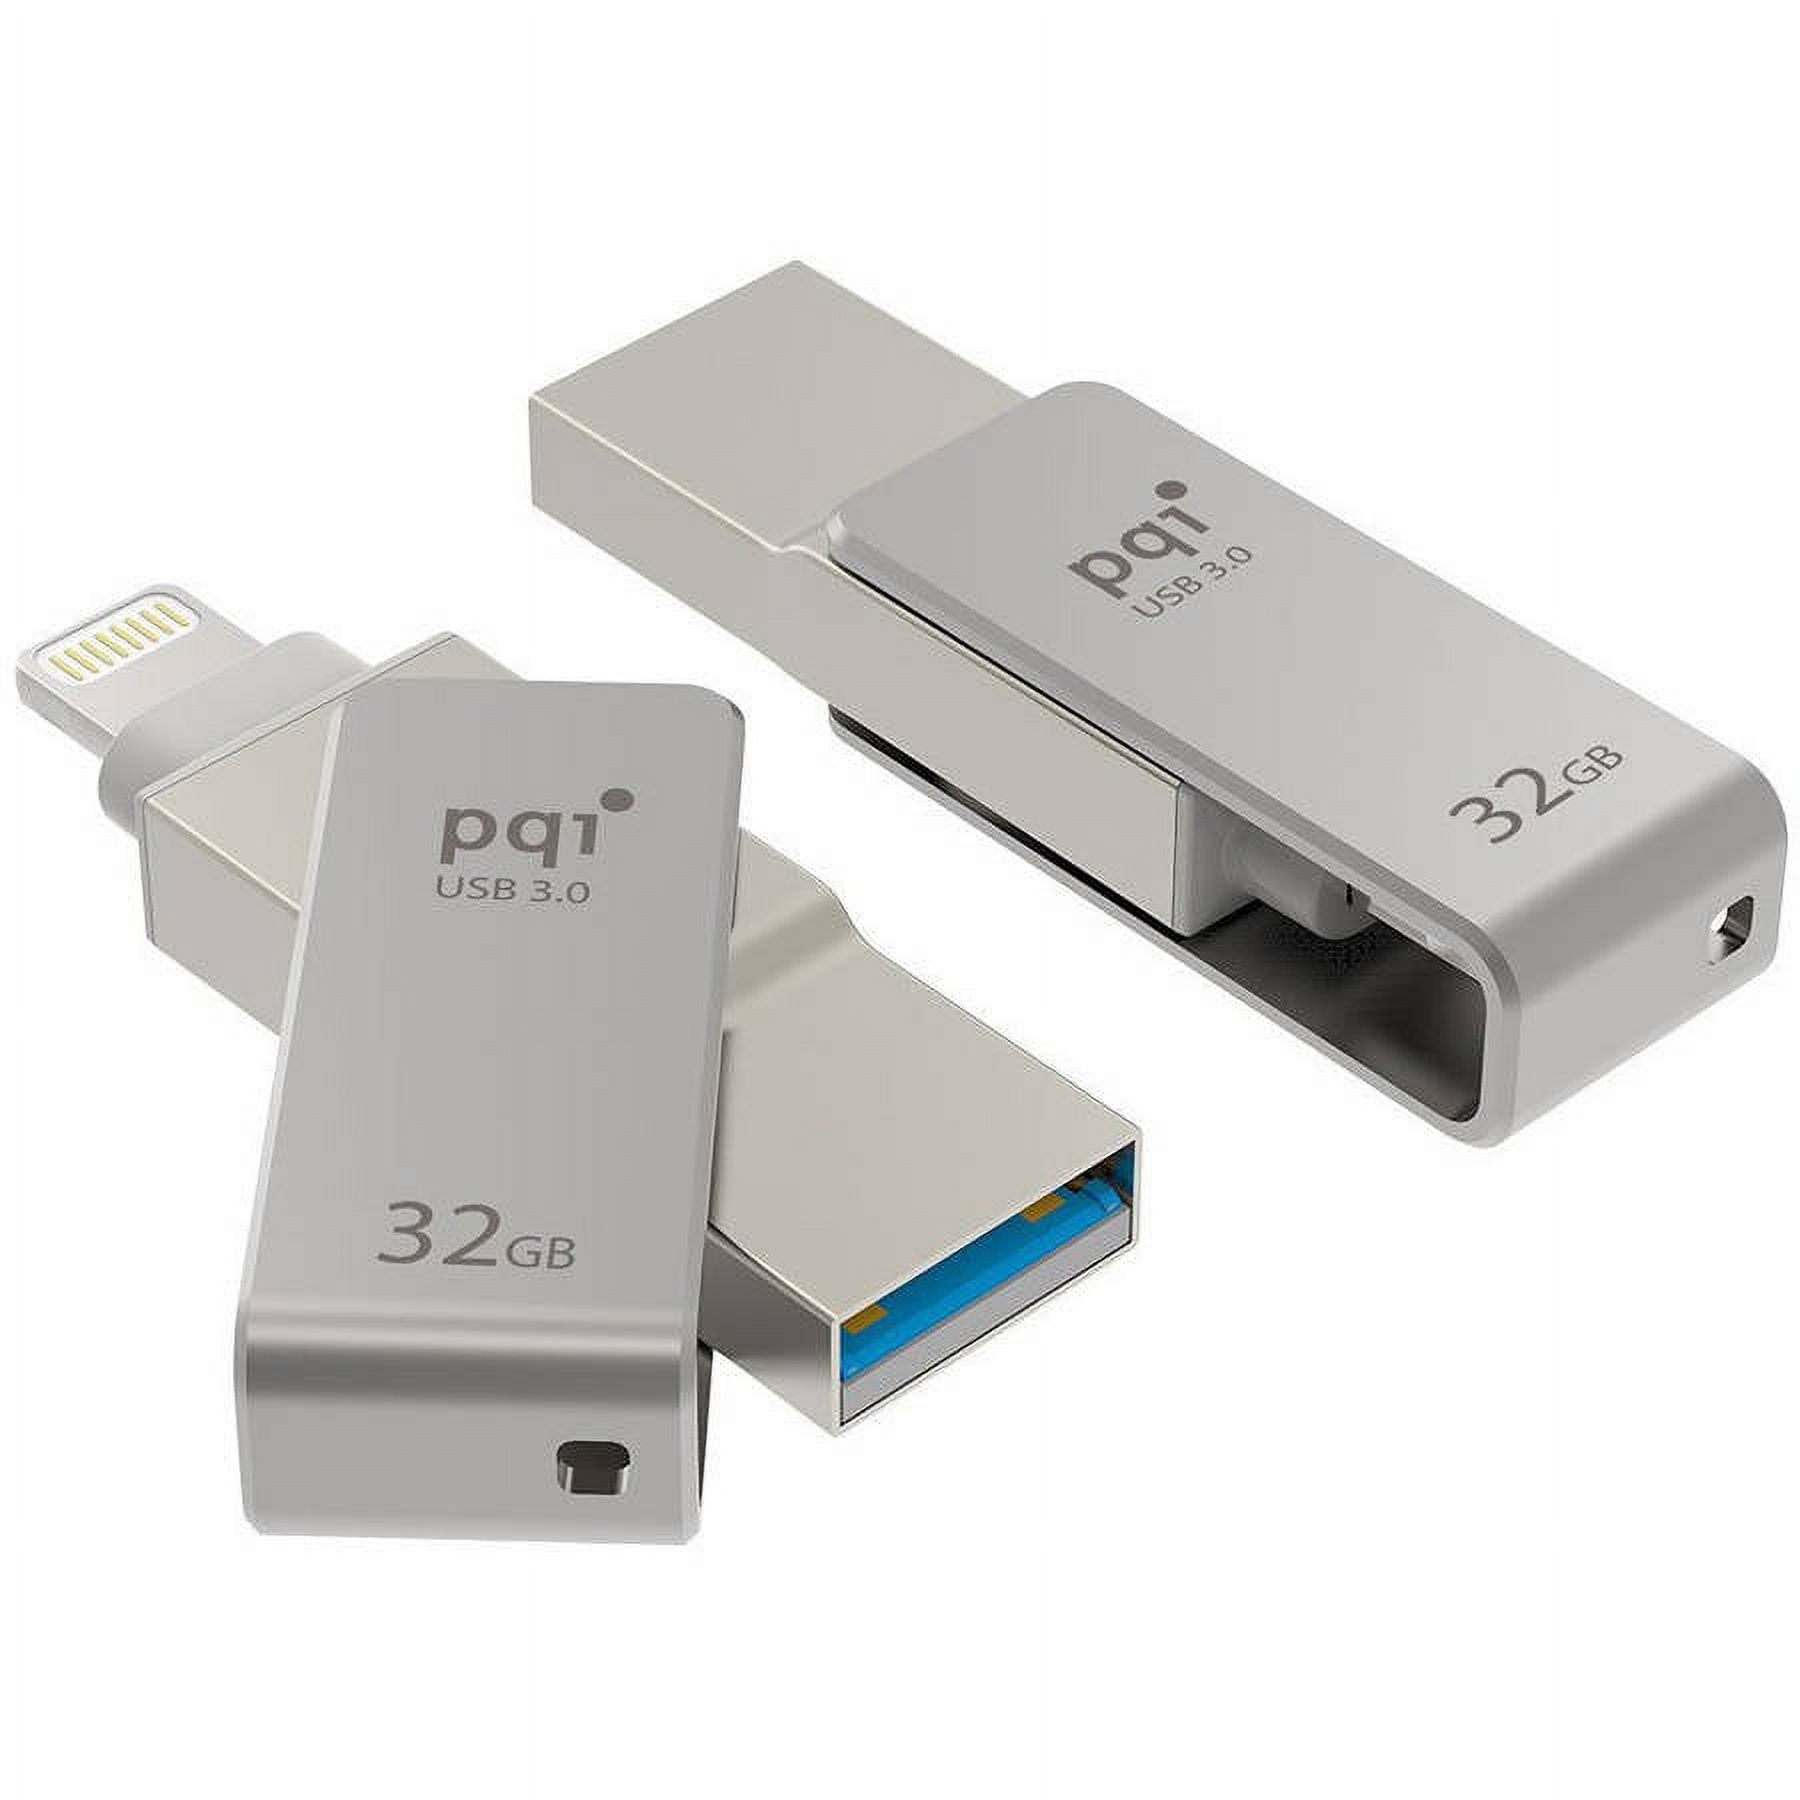 PQI iConnect mini - USB flash drive - 32 GB - USB 3.0 / Lightning - metallic gray - image 2 of 4